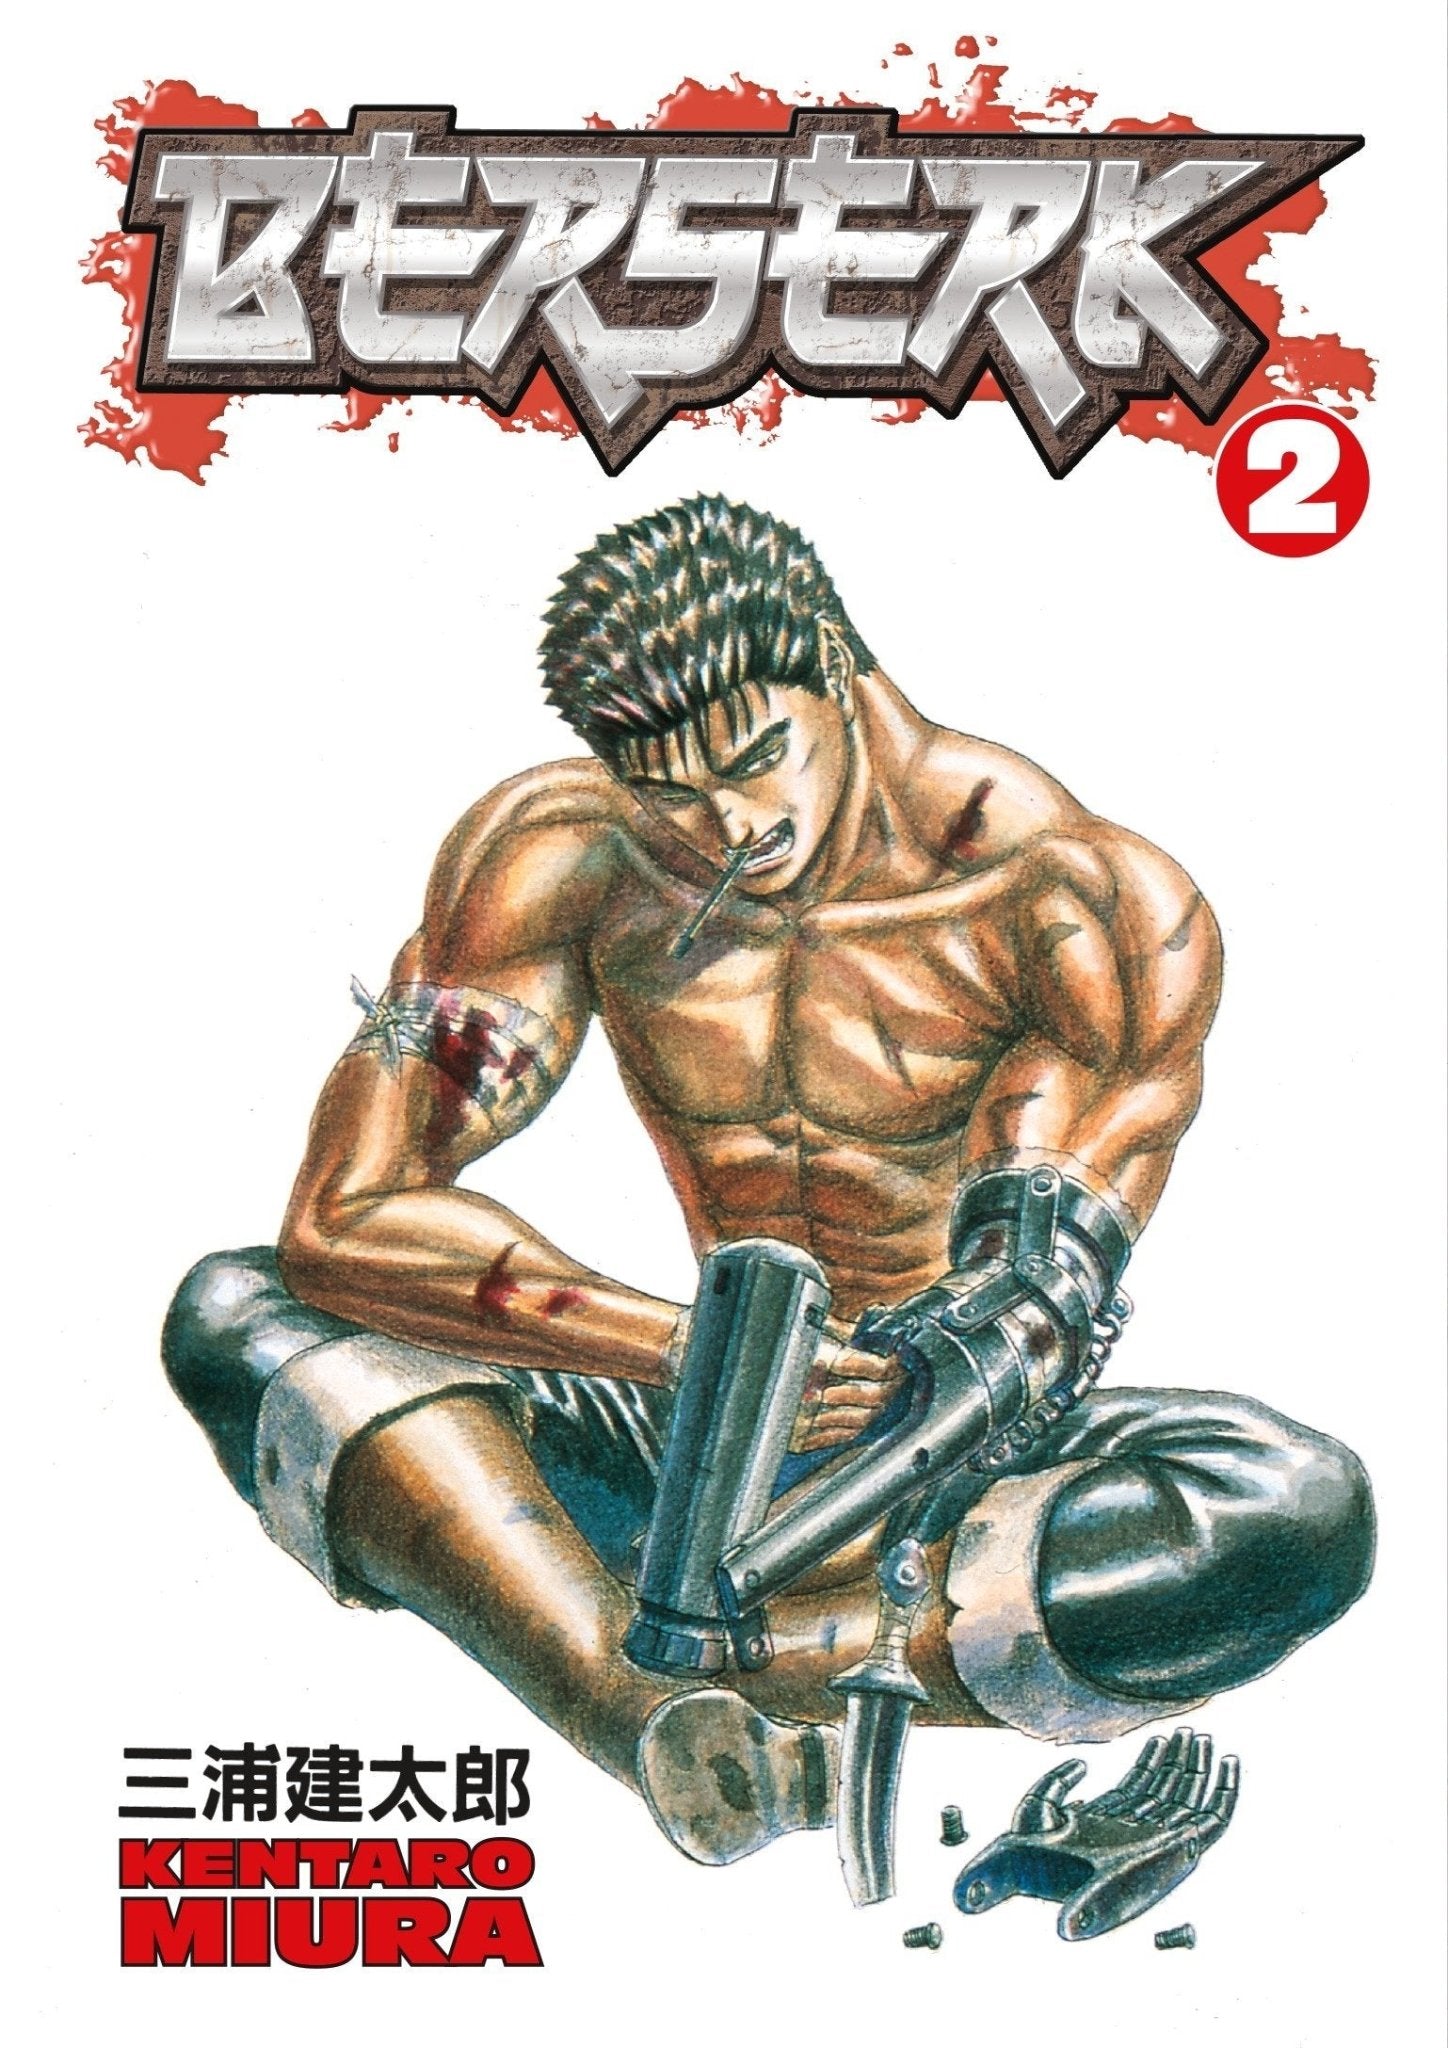 Berserk Manga Starter Bundle - Volumes 1-5 by Kentaro Miura [Paperback